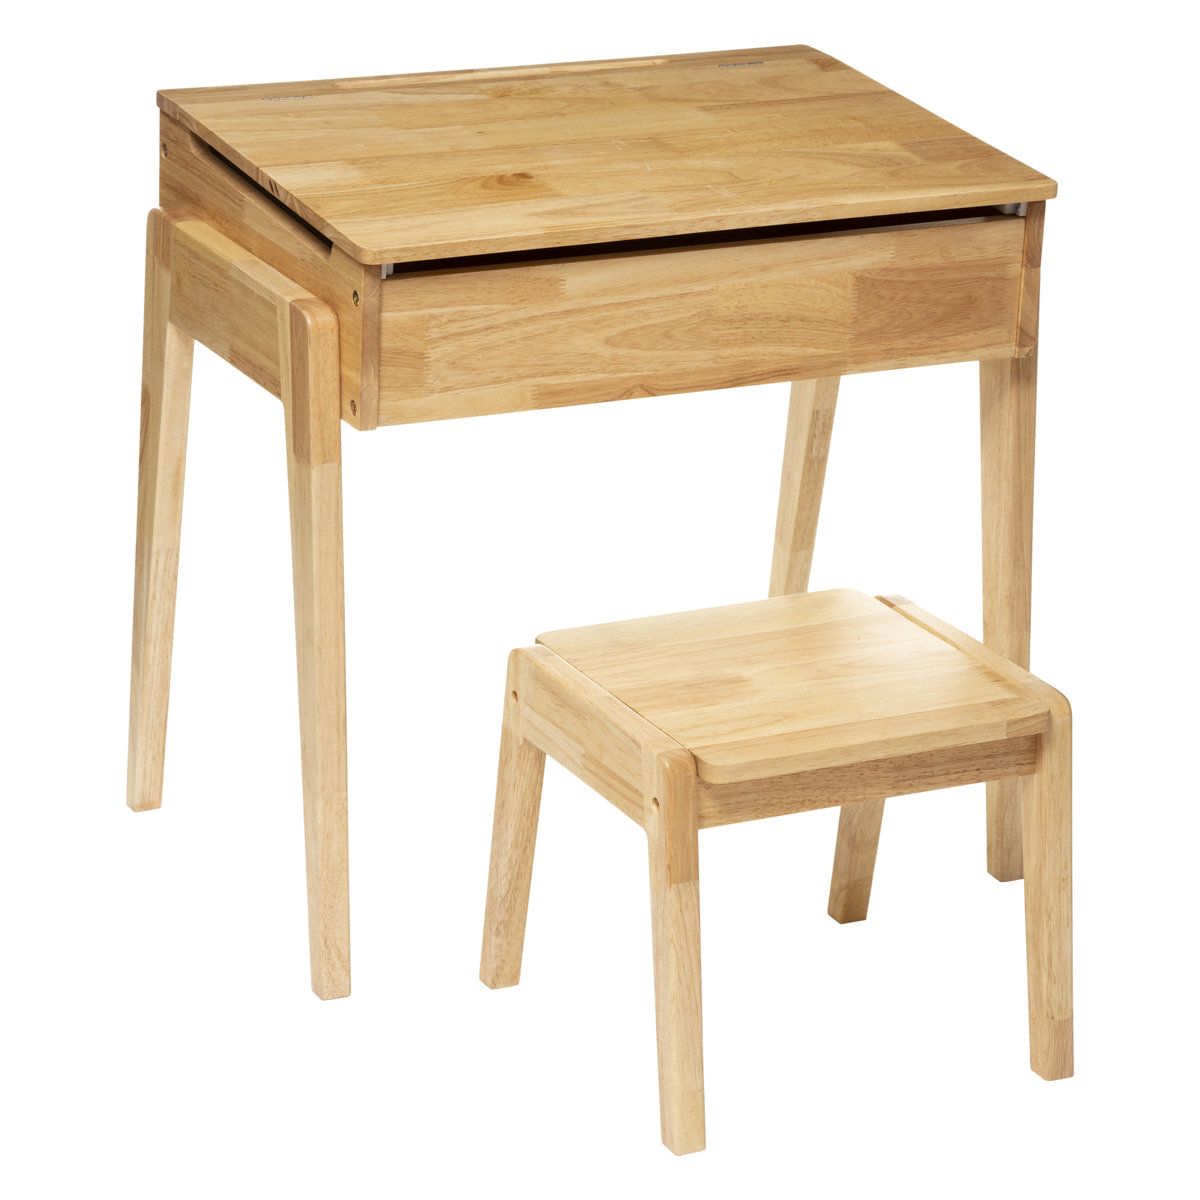 Atmosphera for kids Dětský psací stůl s úložným prostorem + taburet, 2v1 - EDAXO.CZ s.r.o.